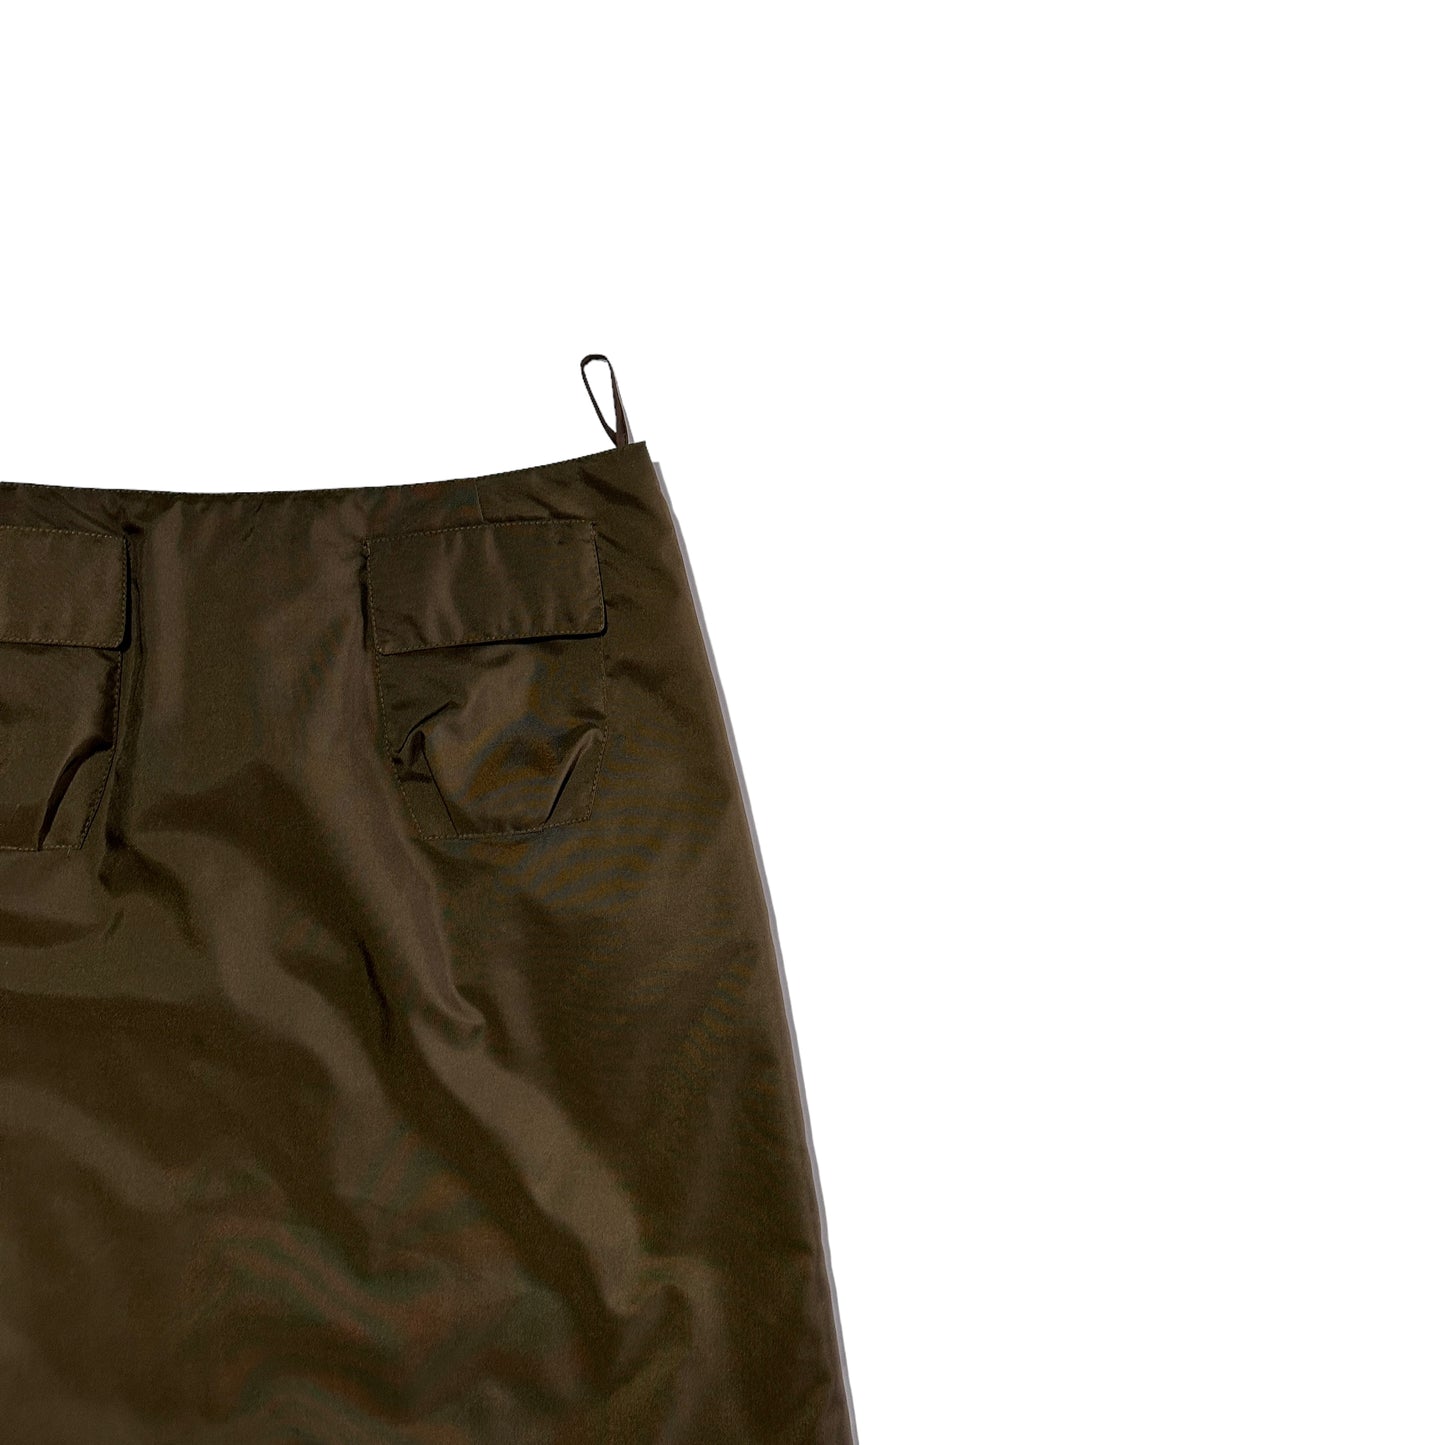 F/W 1999 Miu Miu Hidden Pocket
Skirt set 2/2 (35W)